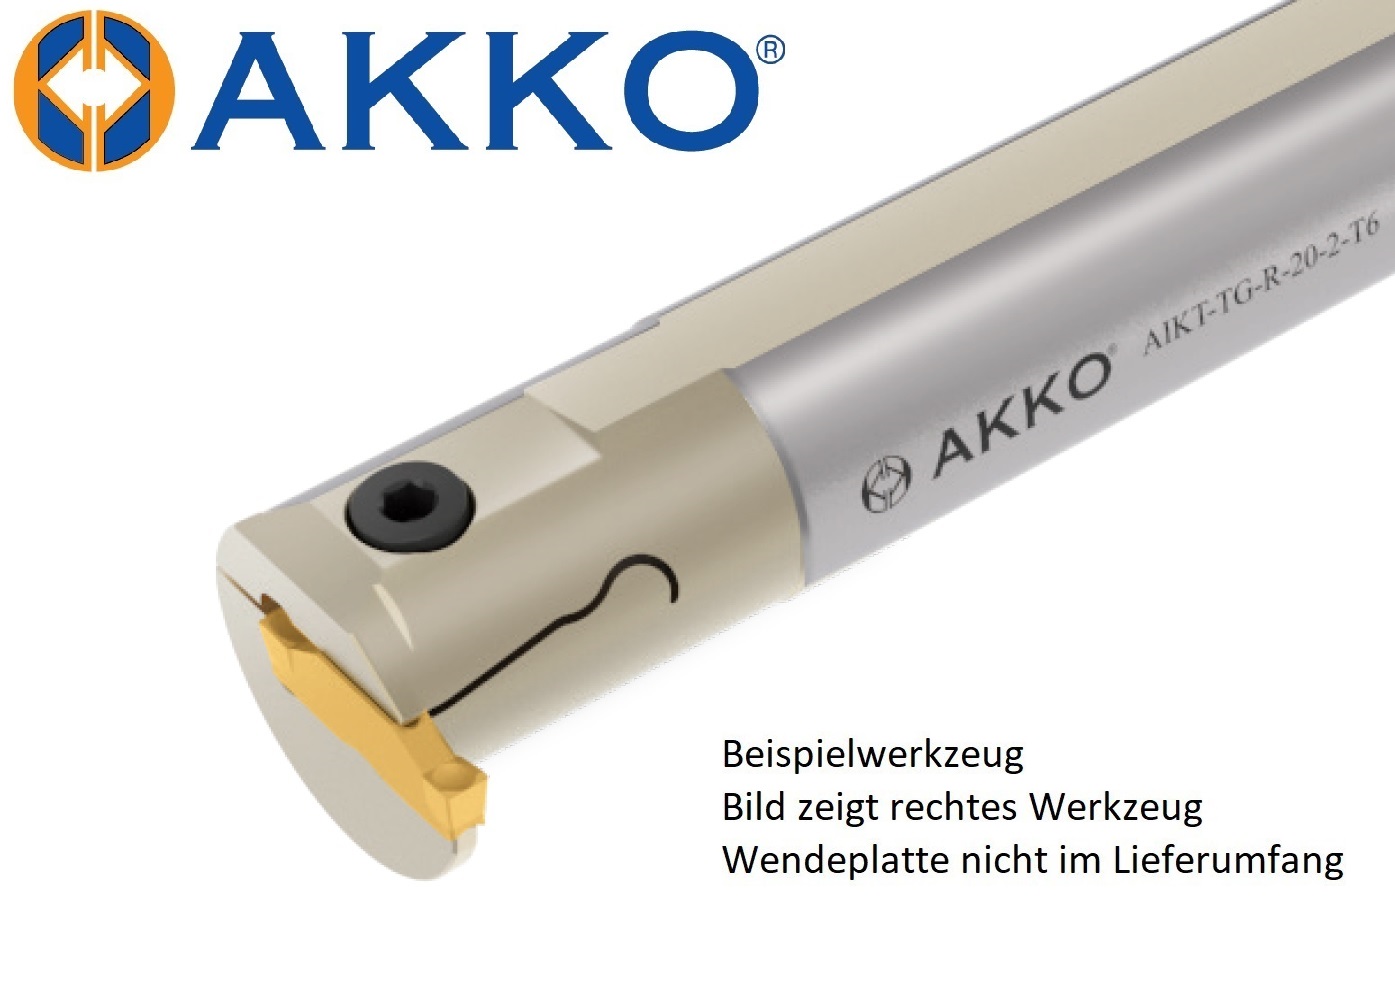 AKKO-Innen-Stechhalter, kompatibel mit Tungaloy-Stechplatte DGIM2-020
Schaft-ø 20, ohne Innenkühlung, rechts